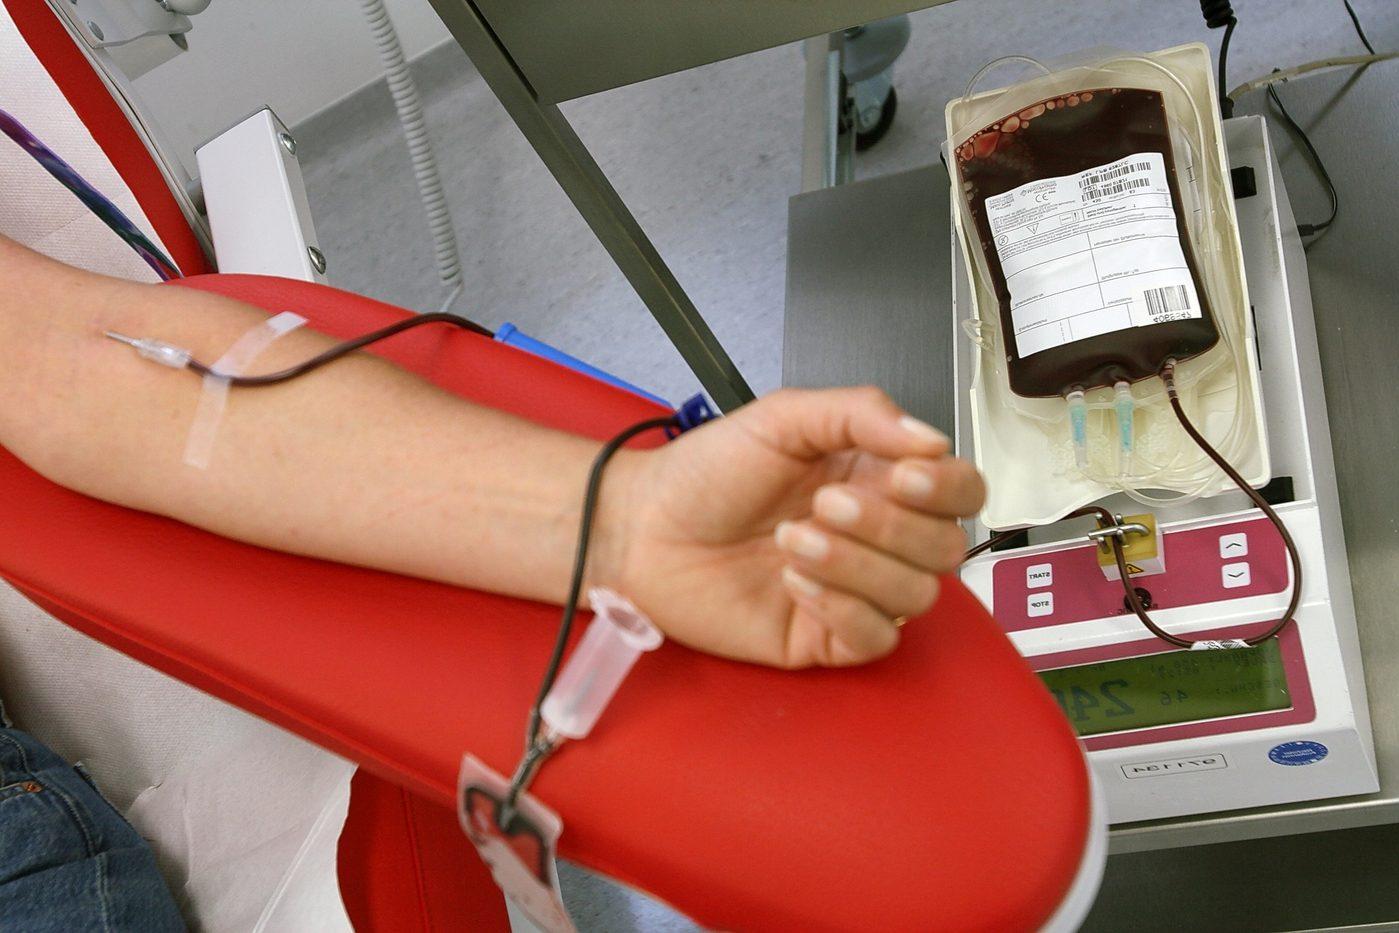 Emergenza sangue, appello dei medici sardi: “Servono donazioni” (archivio L'Unione Sarda)